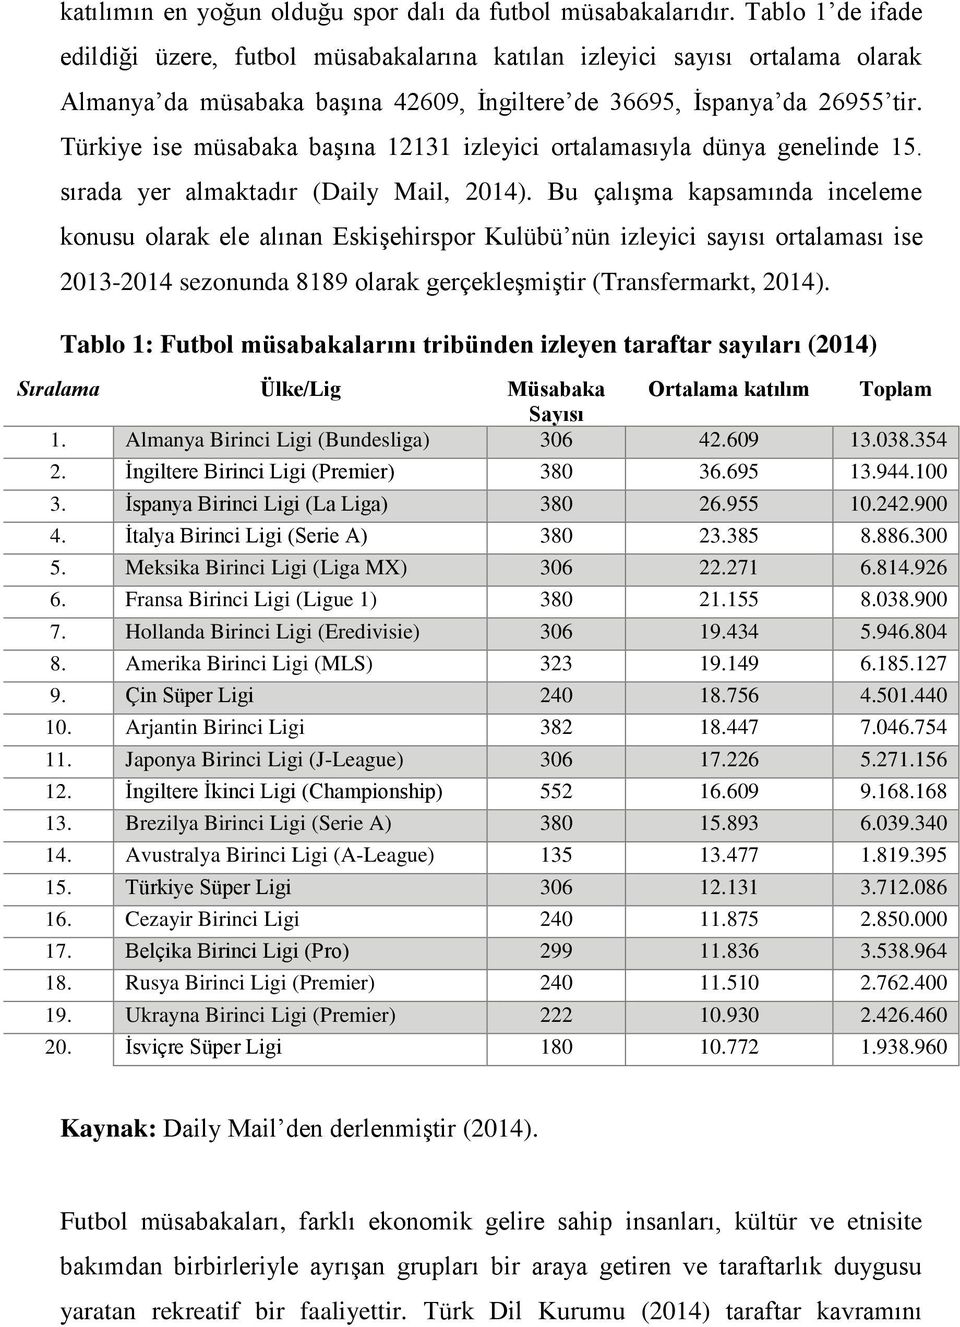 Türkiye ise müsabaka başına 12131 izleyici ortalamasıyla dünya genelinde 15. sırada yer almaktadır (Daily Mail, 2014).